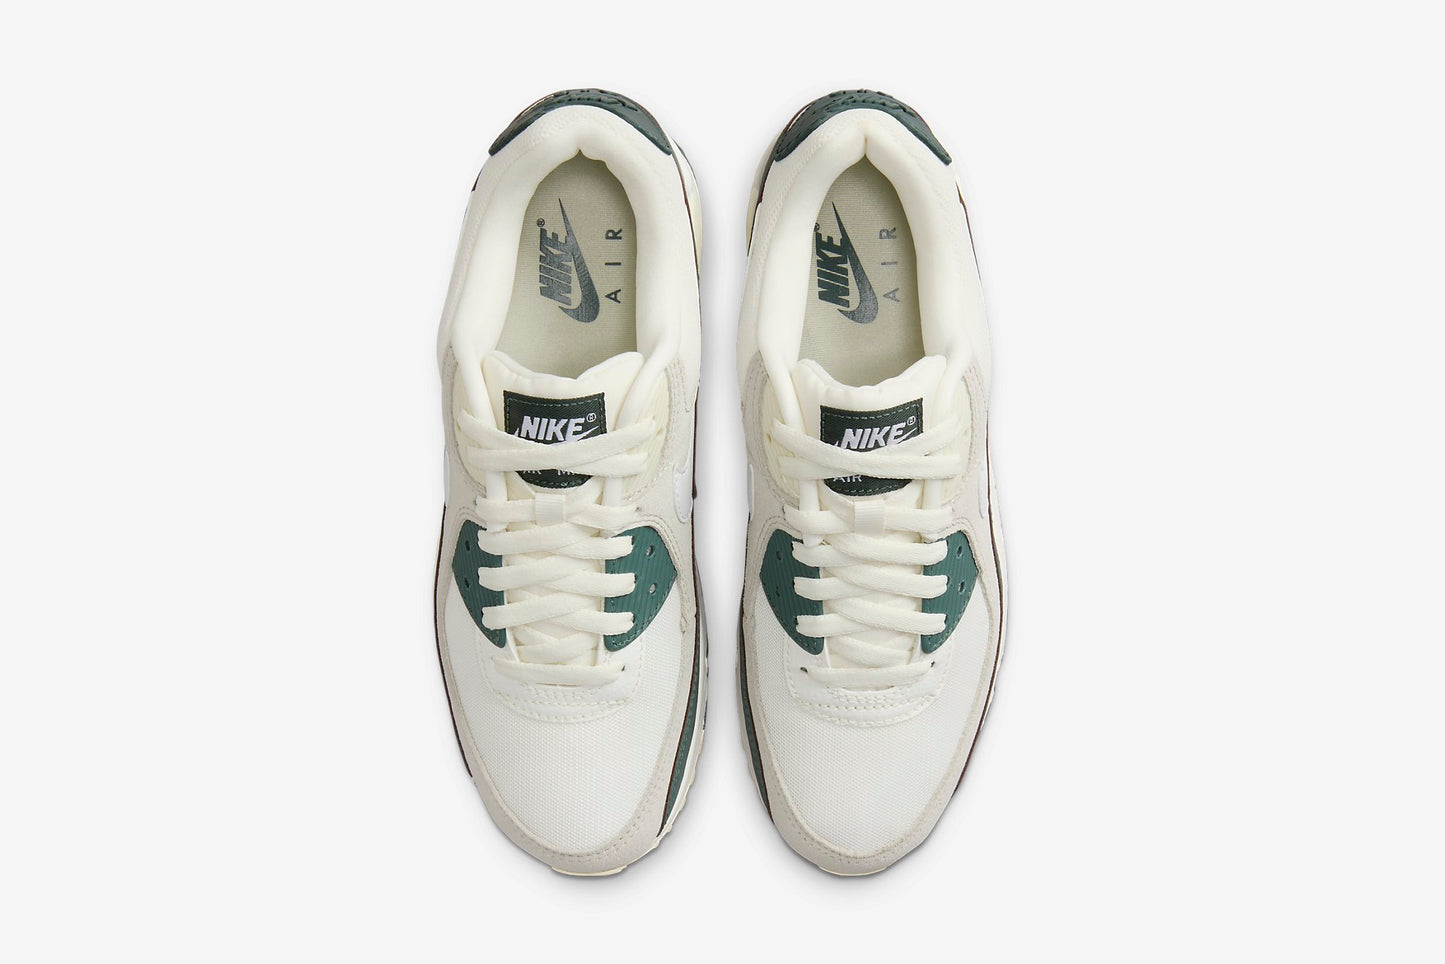 Nike "Air Max 90" W - Sail/ White-Vintage Green